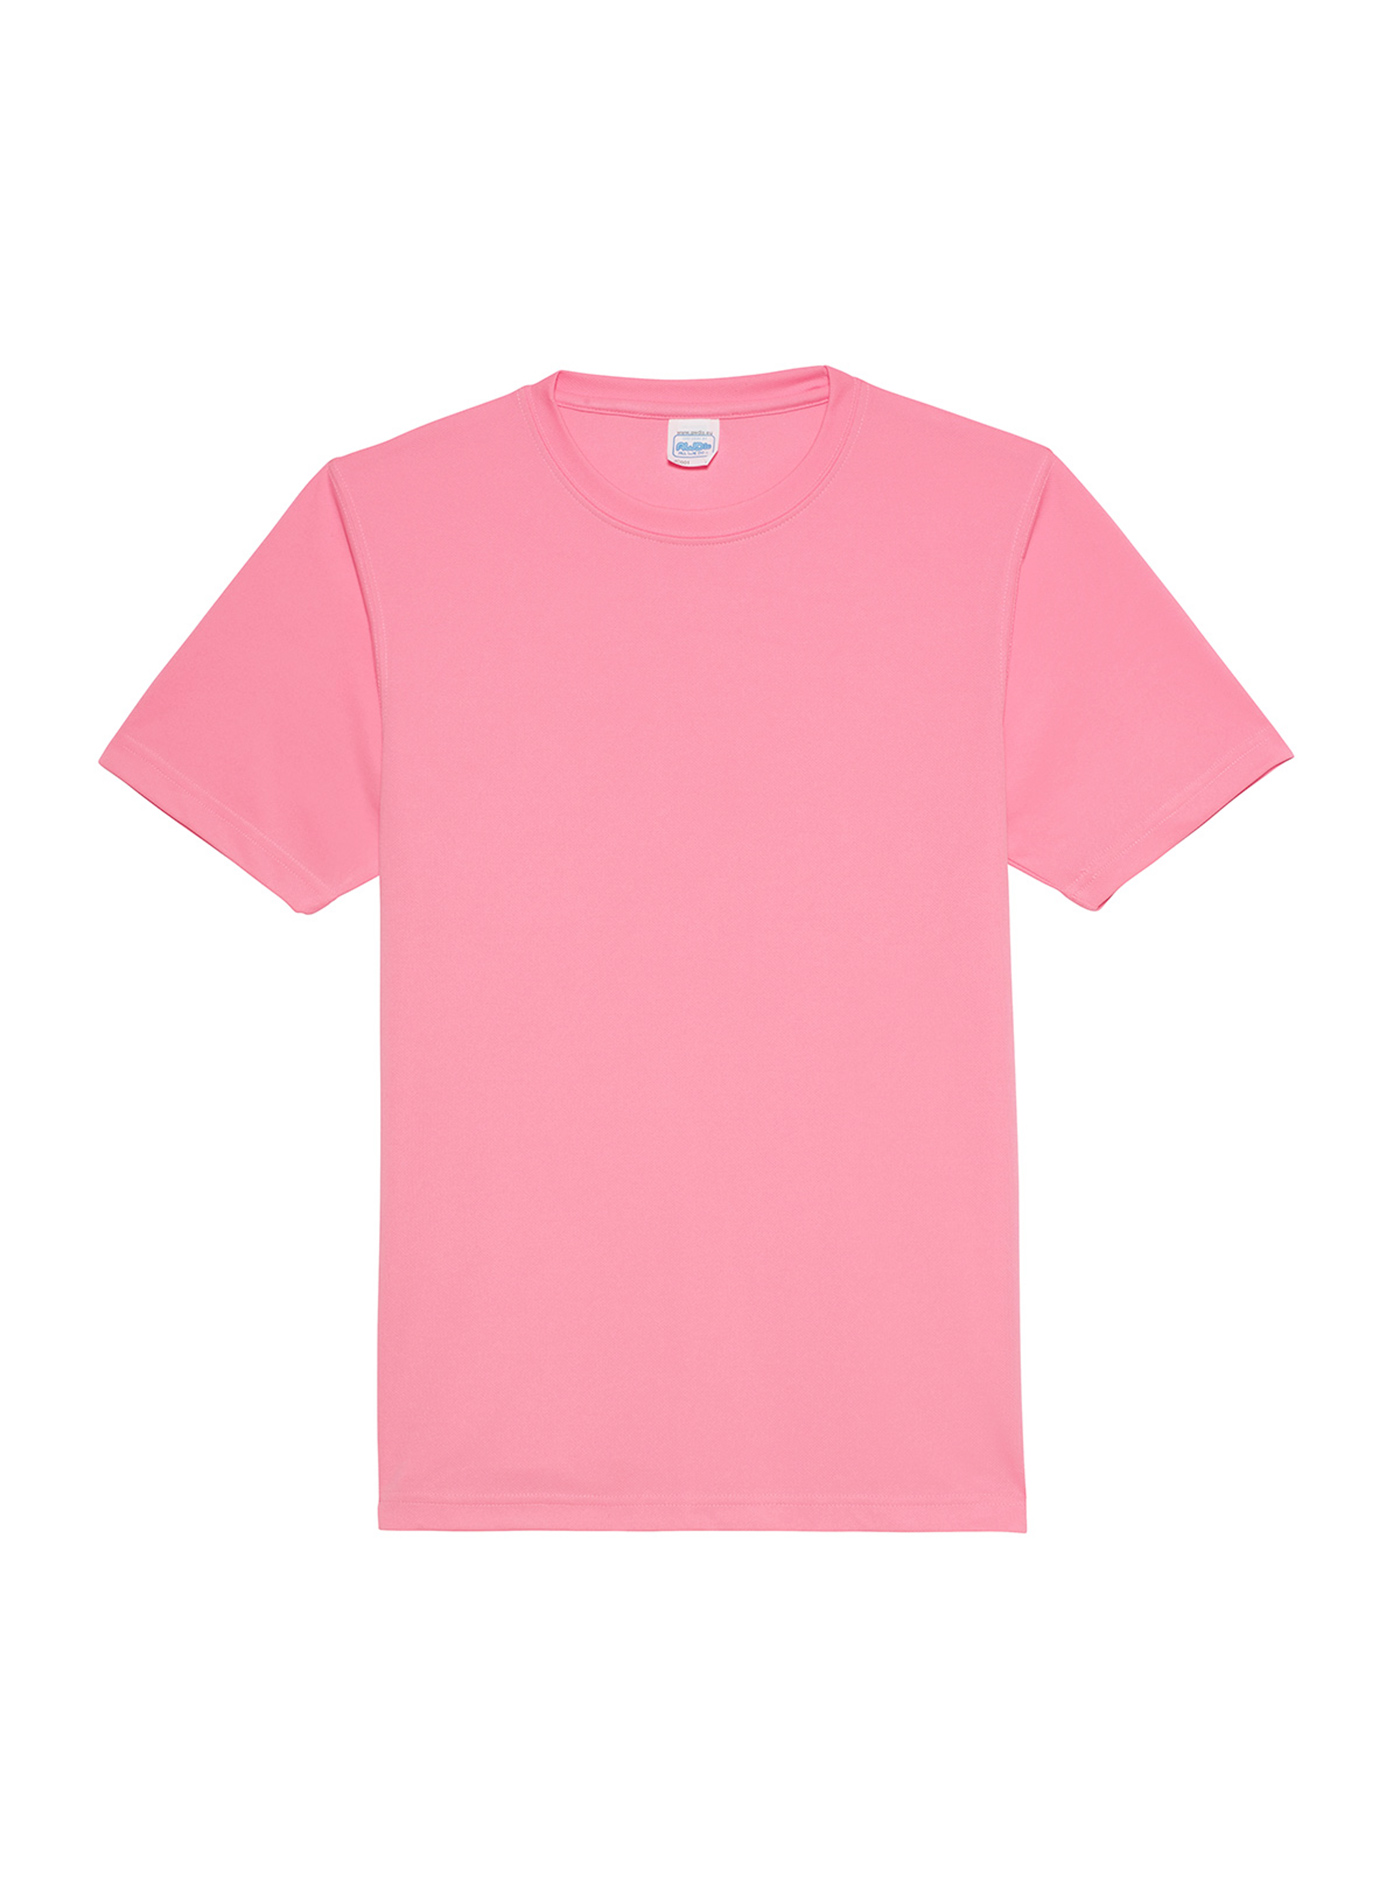 Unisex tričko Neonlight - Neonově růžová XXL